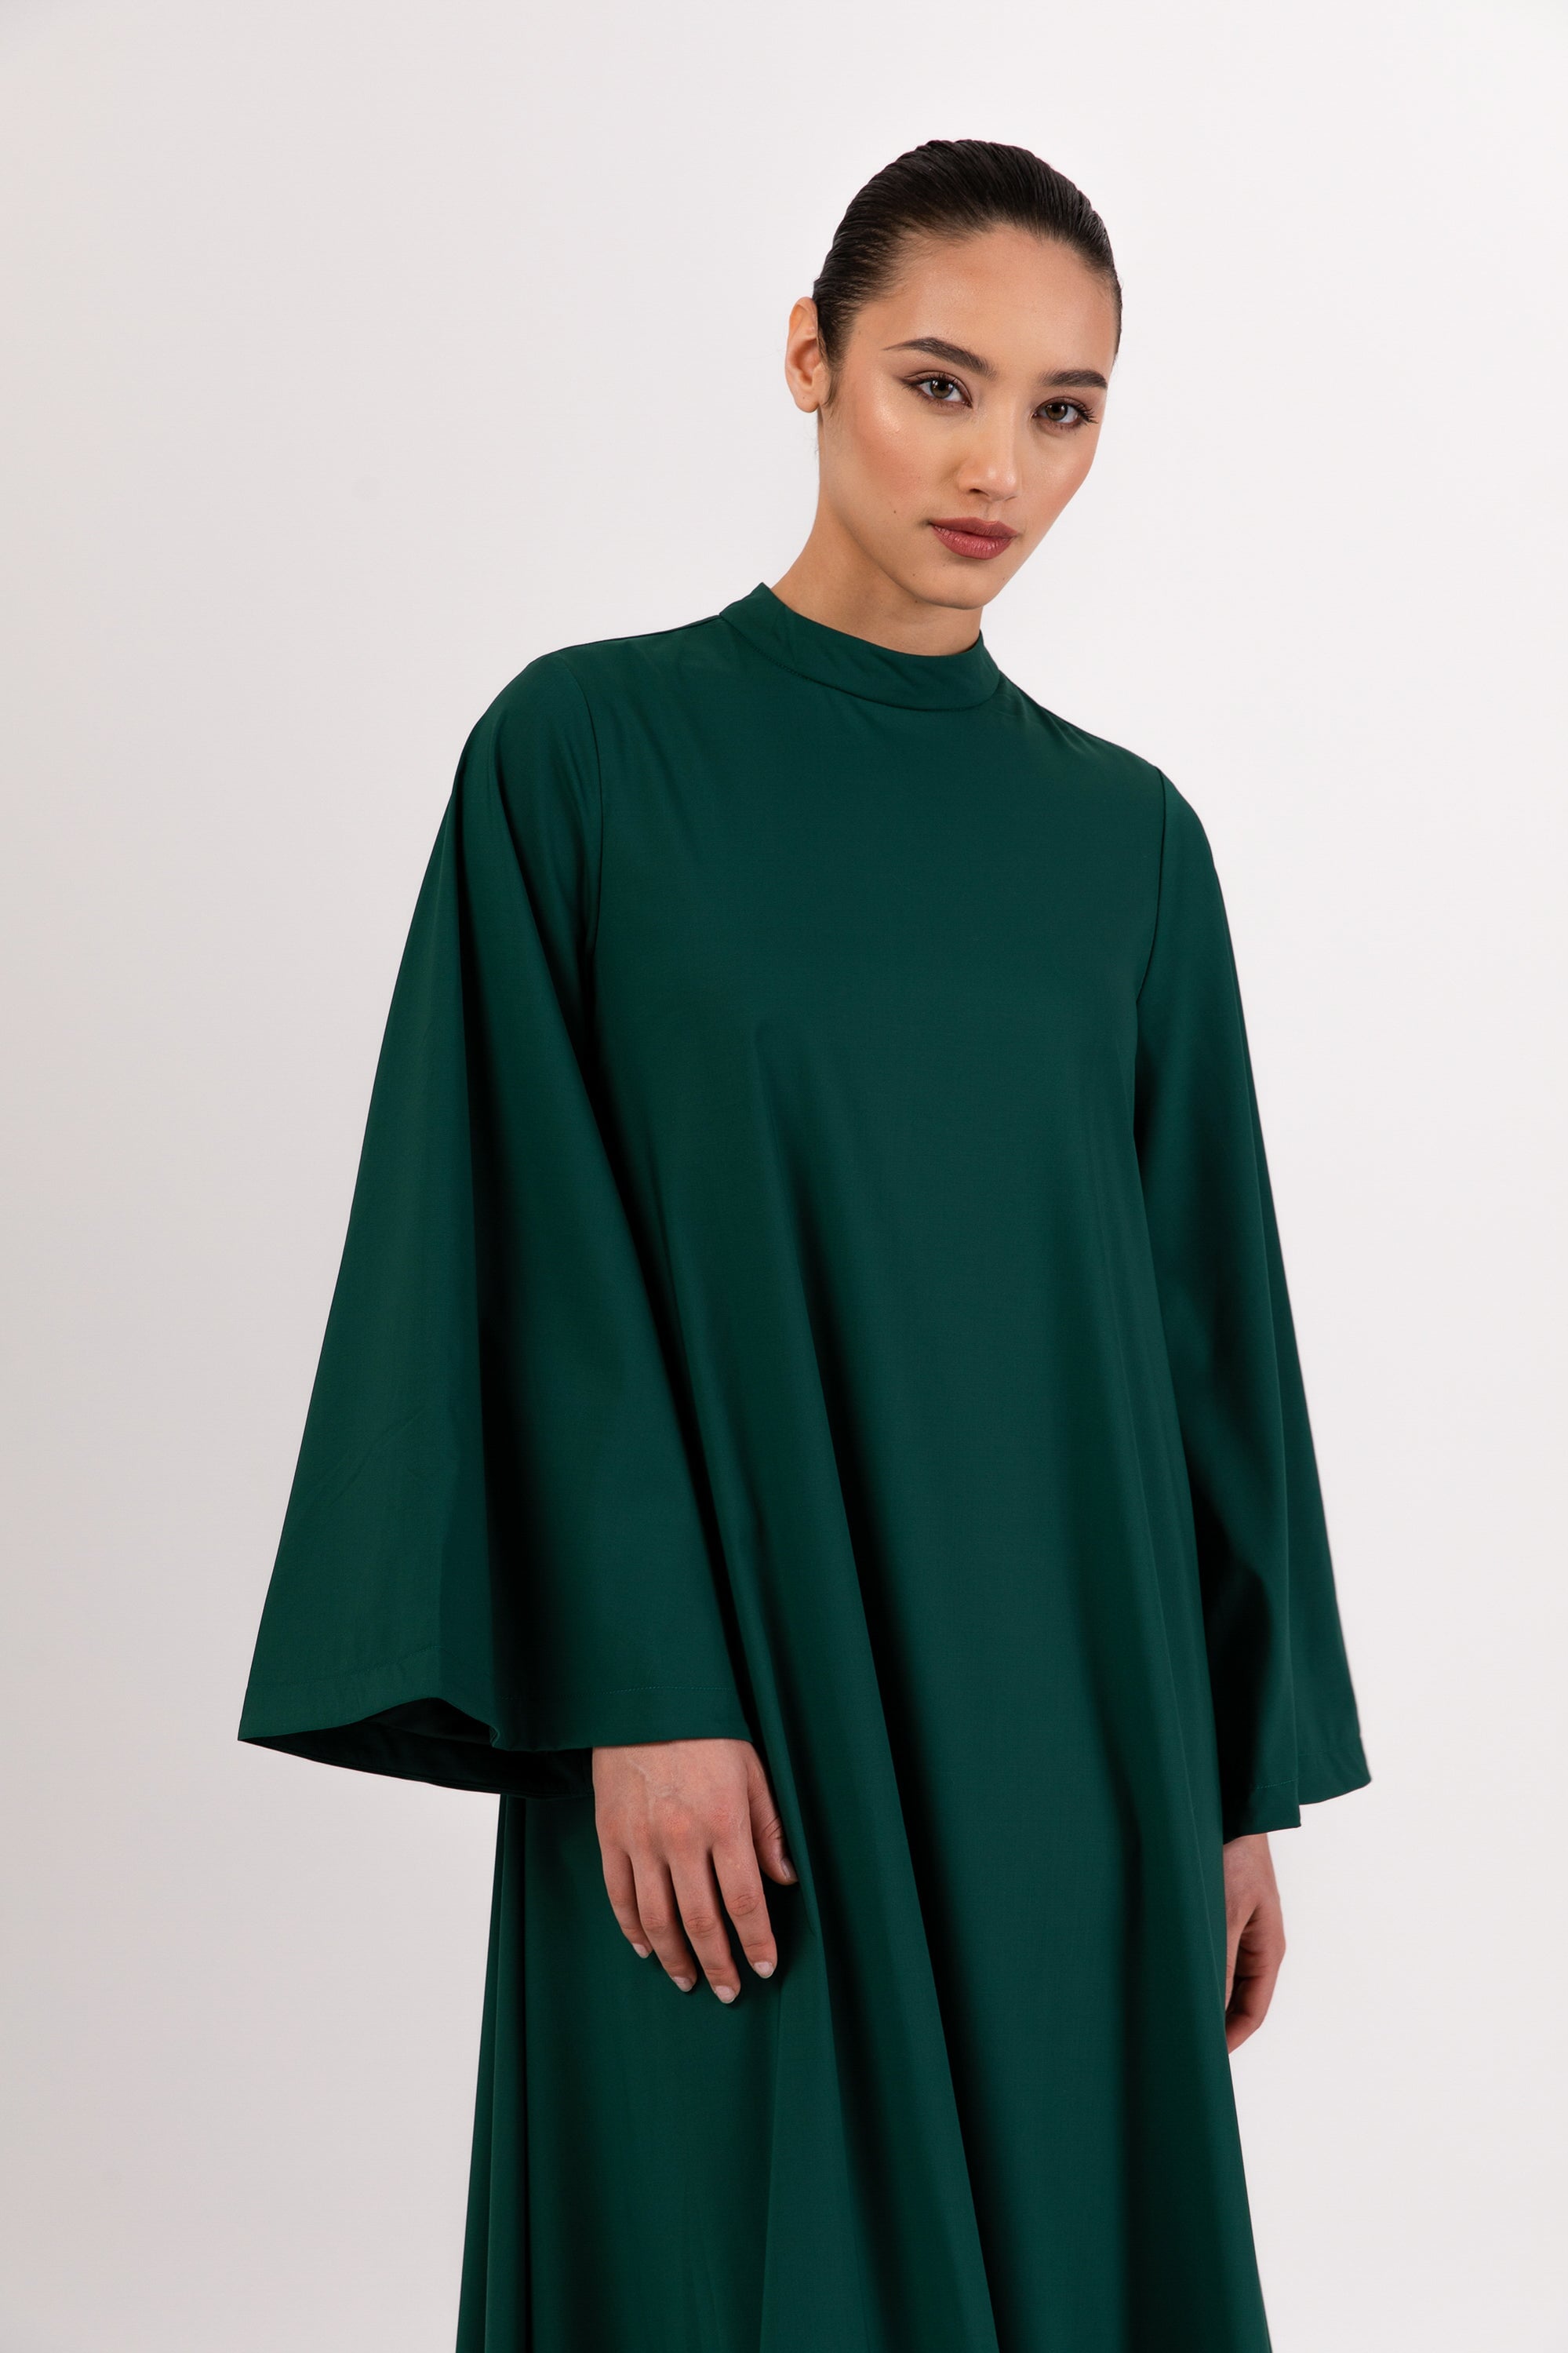 Safira Ruffle Hem Maxi Dress - Emerald Veiled 